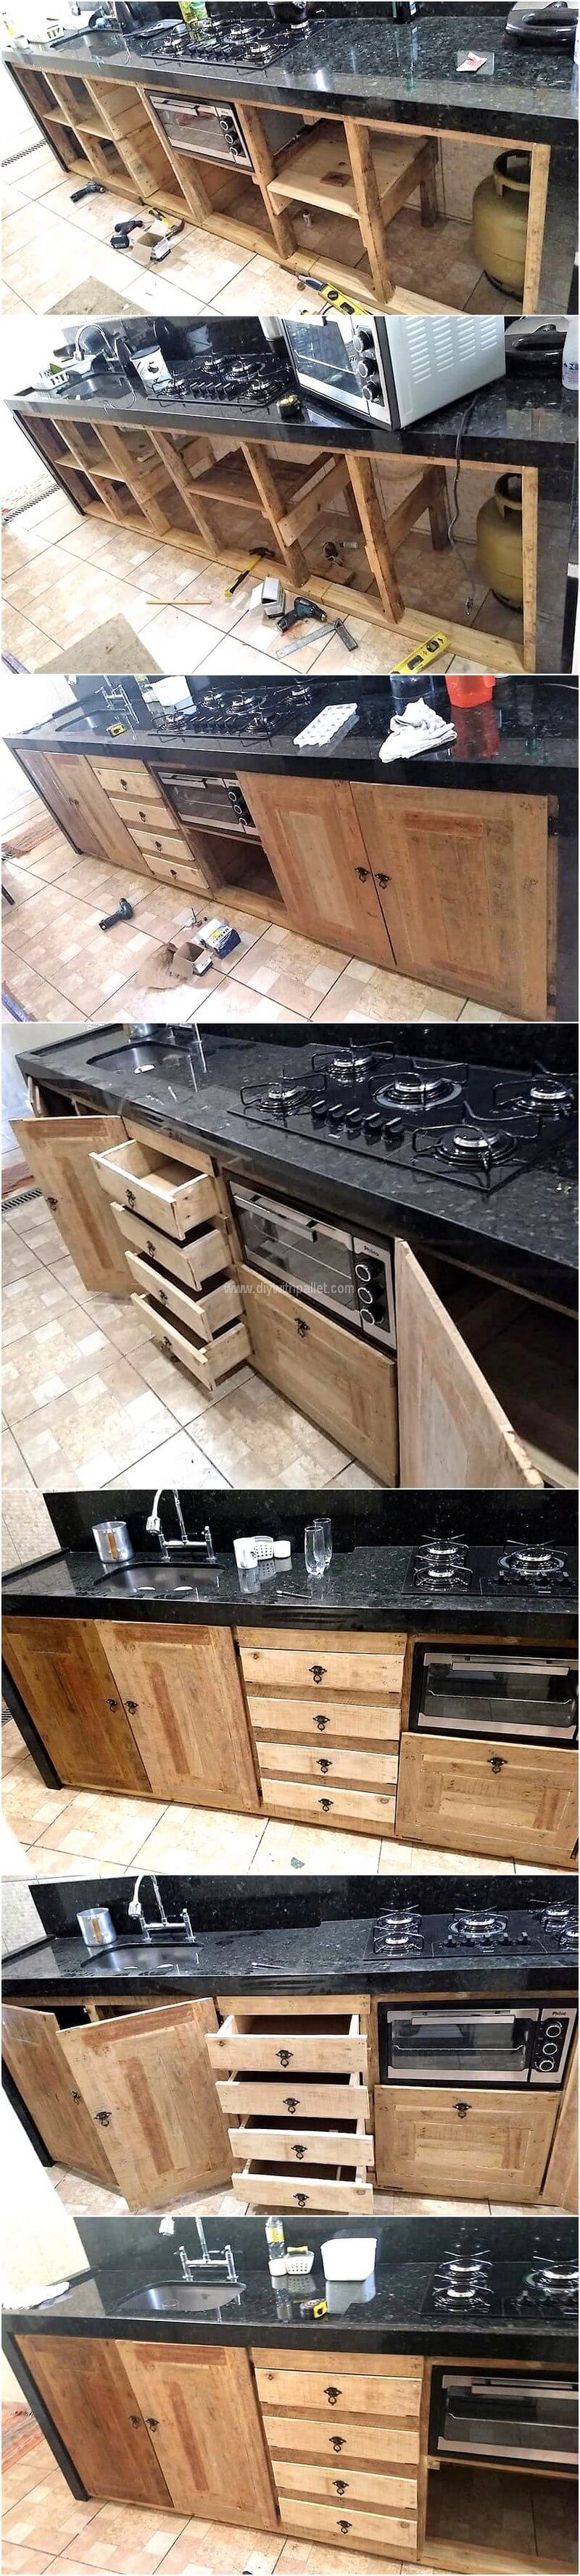 DIY pallet kitchen storage